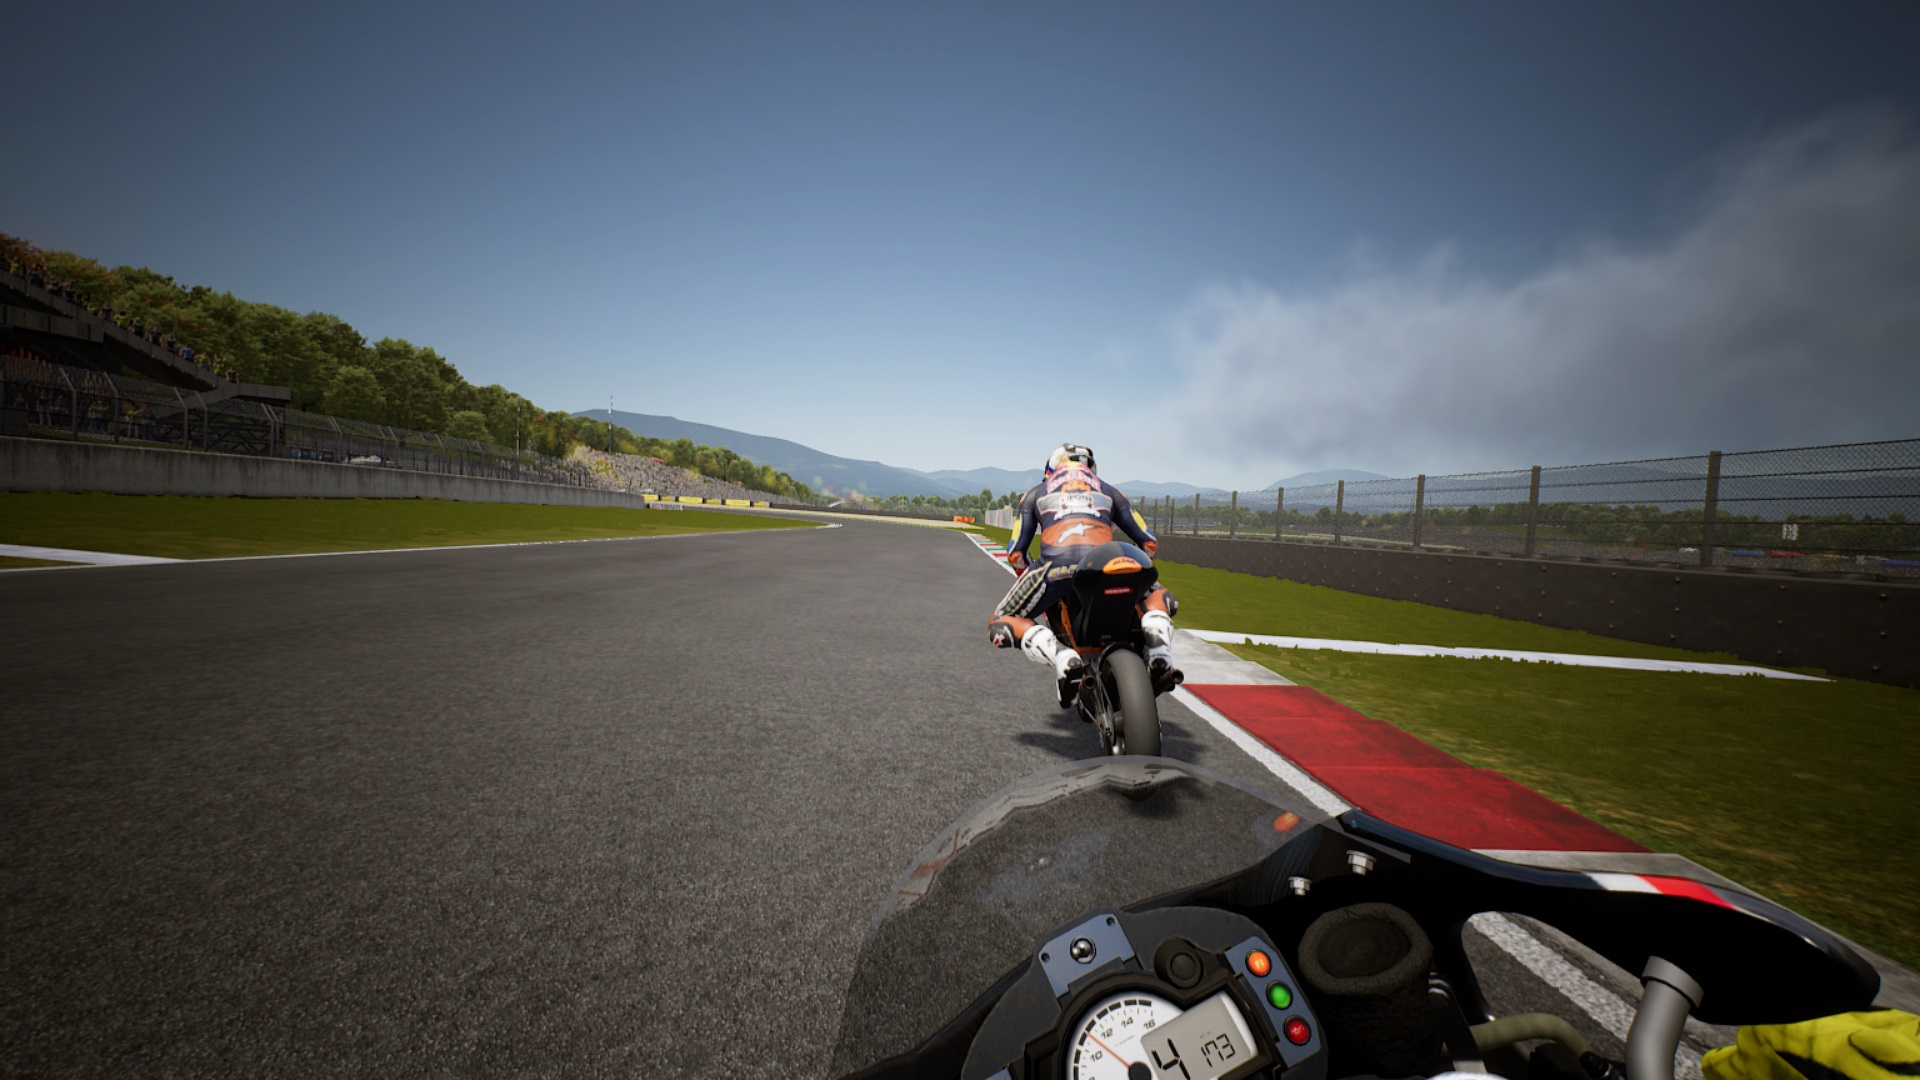 Moto GP, Trials e mais: veja os melhores jogos de moto de todos os